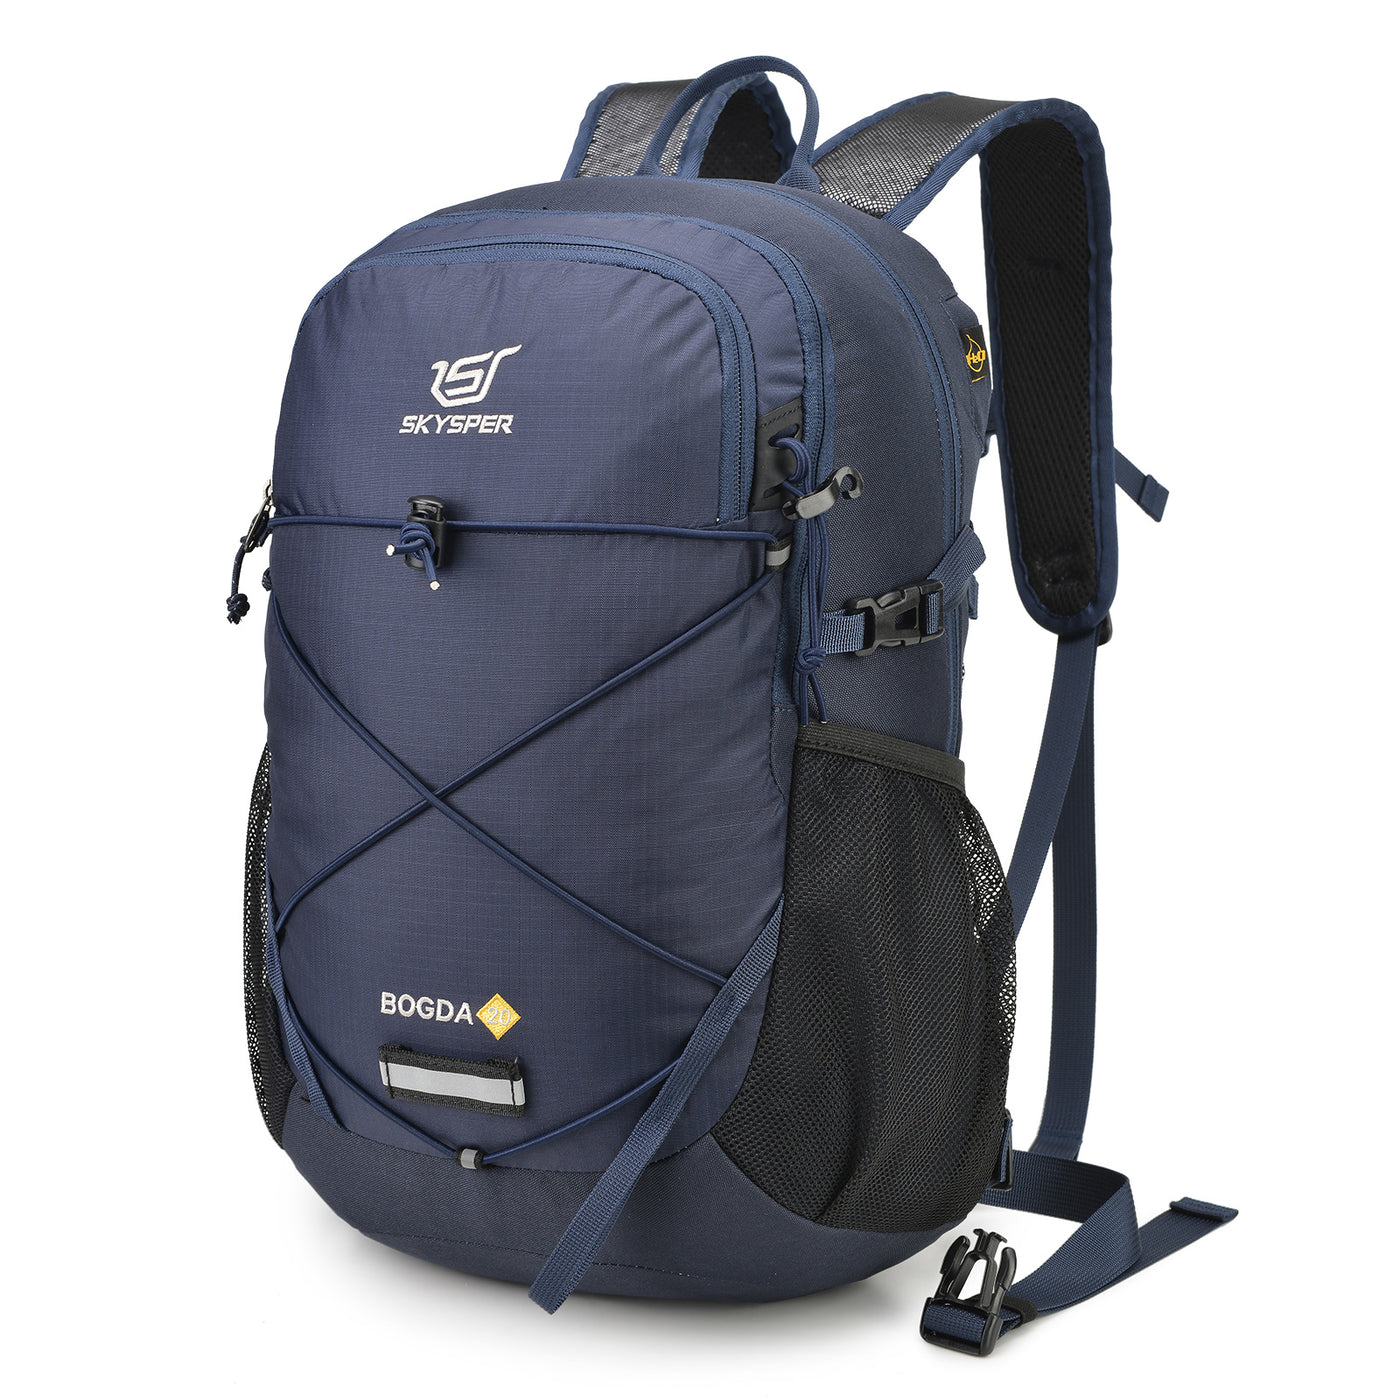 BOGDA20, 20L Small Backpack